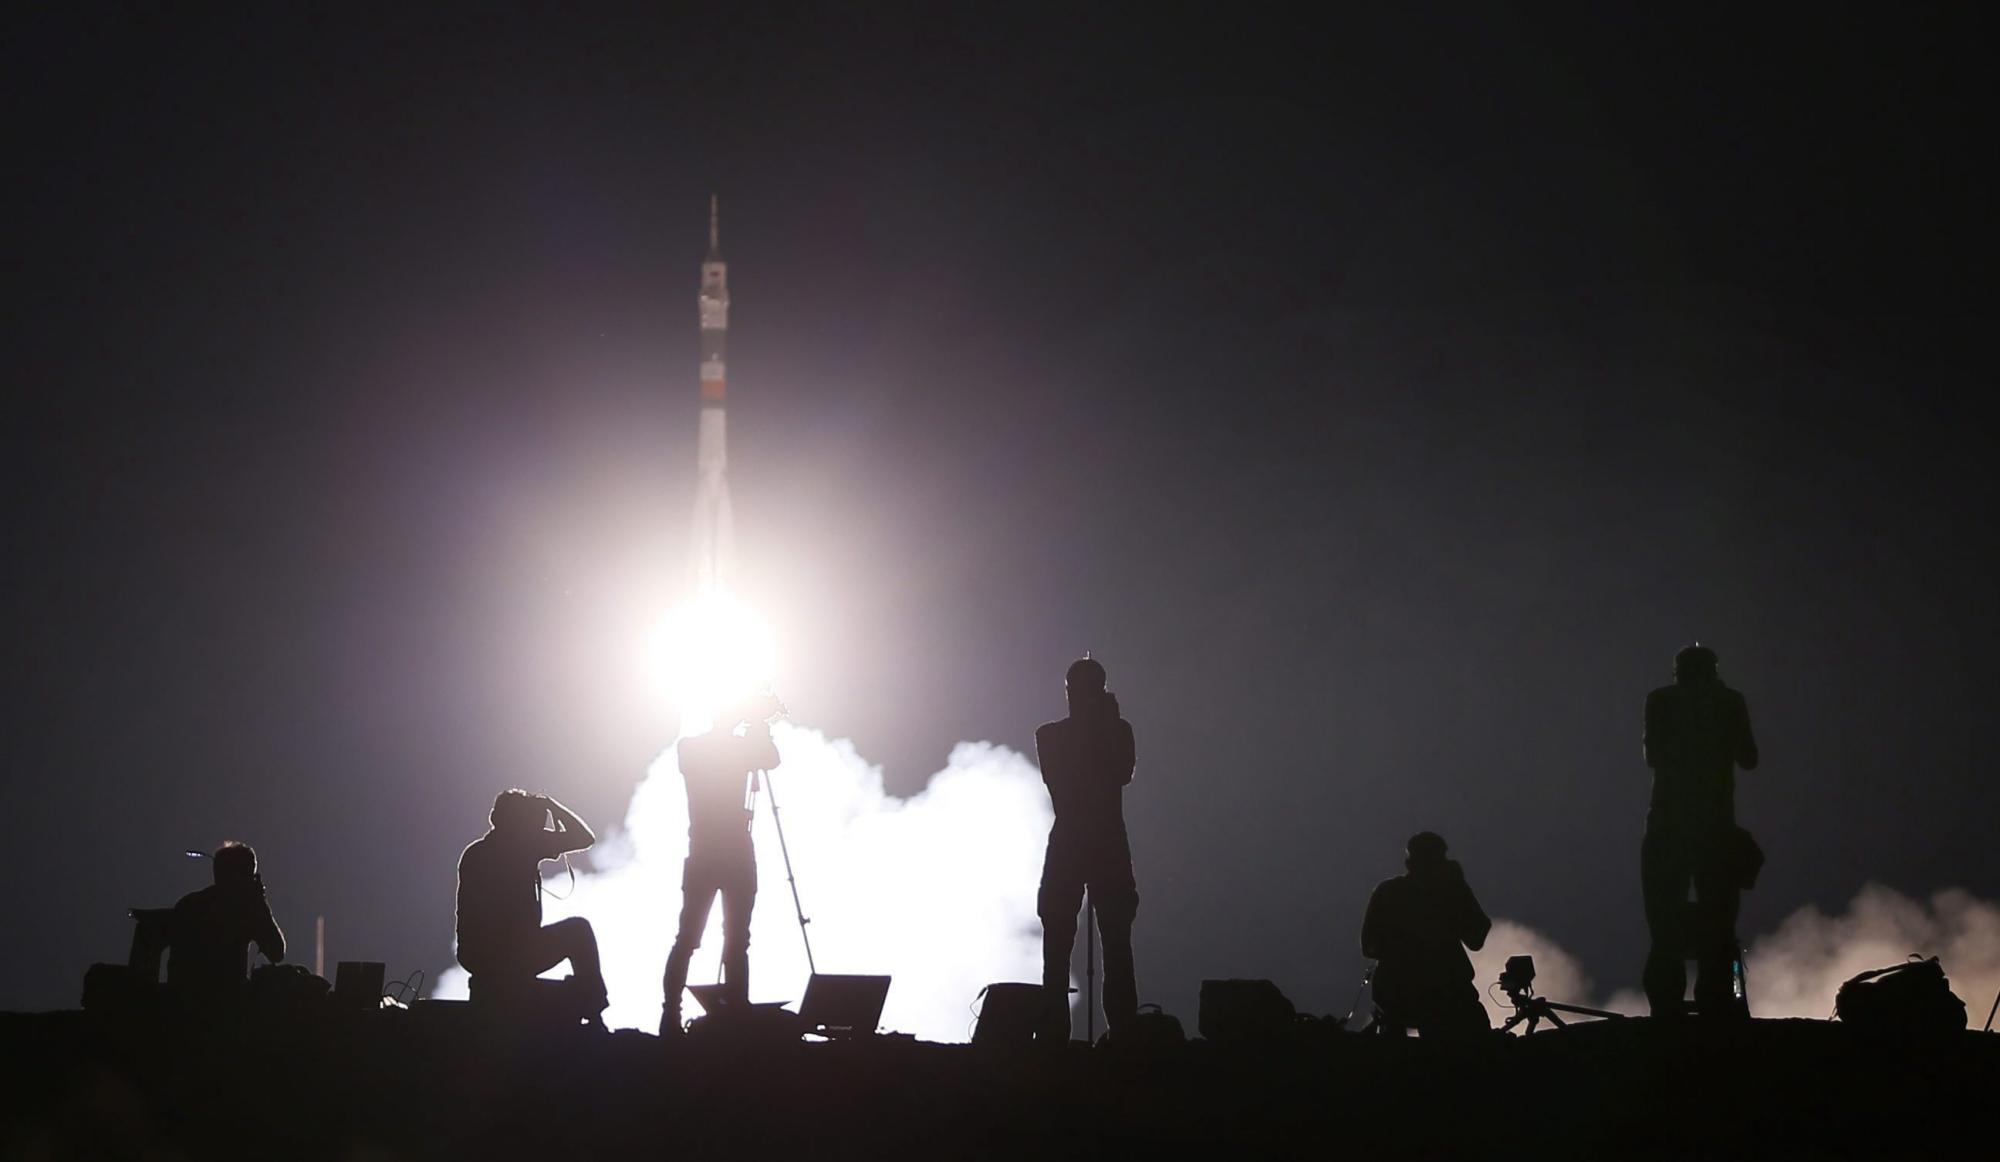 Imagen donde se ven siluetas de fotógrafos durante el despegue del cohete Soyuz TMA-17M hacia la Estación Espacial Internacional (ISS) hoy, miércoles 22 de julio de 2015, en el cosmódromo de Baikonur (Kasajistán). El Soyuz llega a los integrantes del grupo principal de la expedición 44/45 a la Estación Espacial Internacional (ISS), el astronauta de la NASA Kjell Lindgren, el astronauta japonés Kimiya Yui y el cosmonauta ruso Oleg Kononenko.